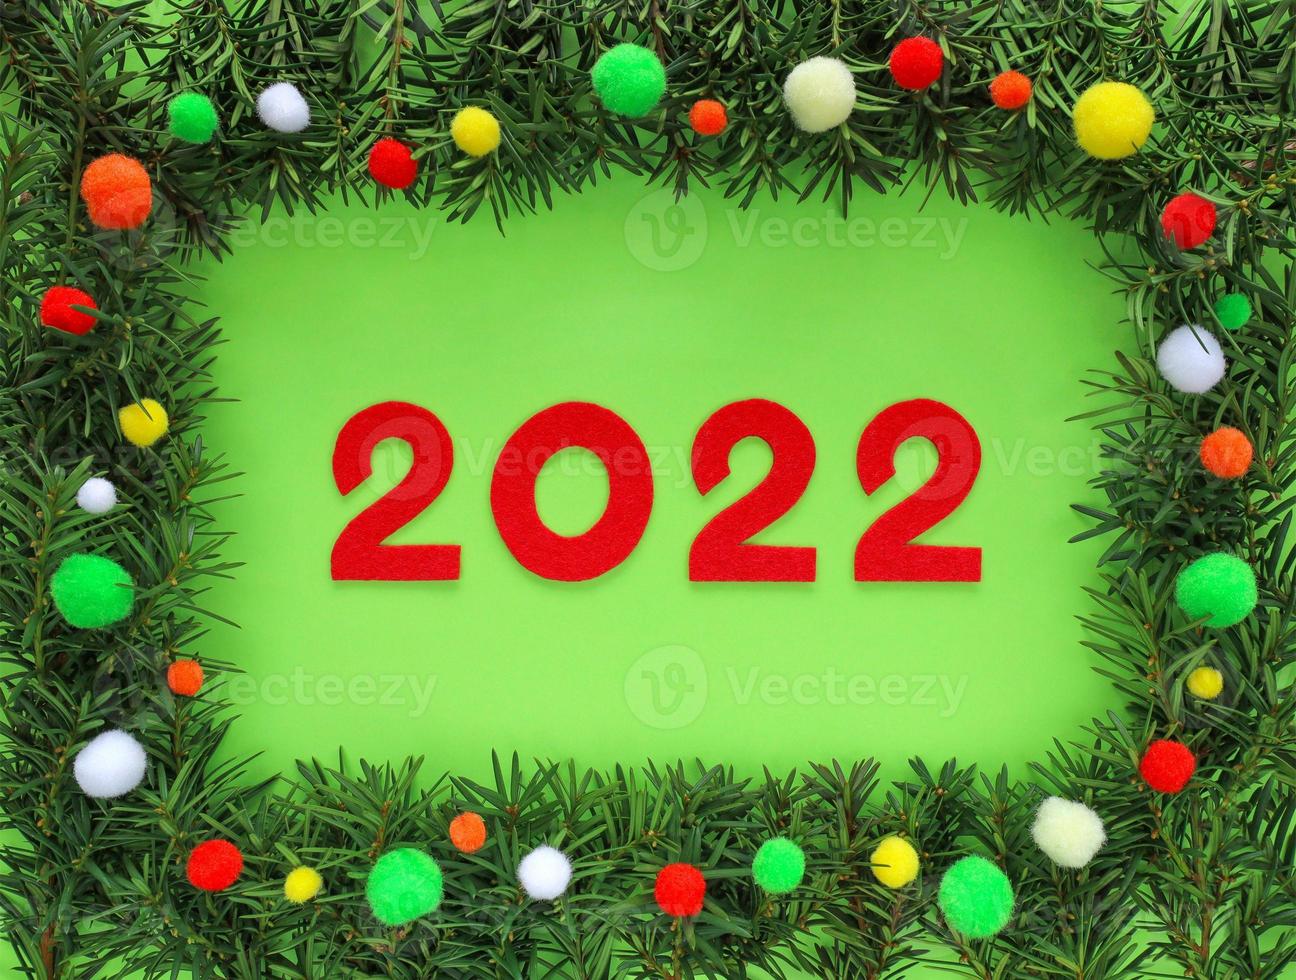 feutre rouge nouvel an numéros 2022 dans le cadre fait des branches de sapin autour sur fond vert clair. bordure décorée de pompons colorés - blanc, jaune, orange, rouge, vert. bilan de l'année. noël 2022. photo